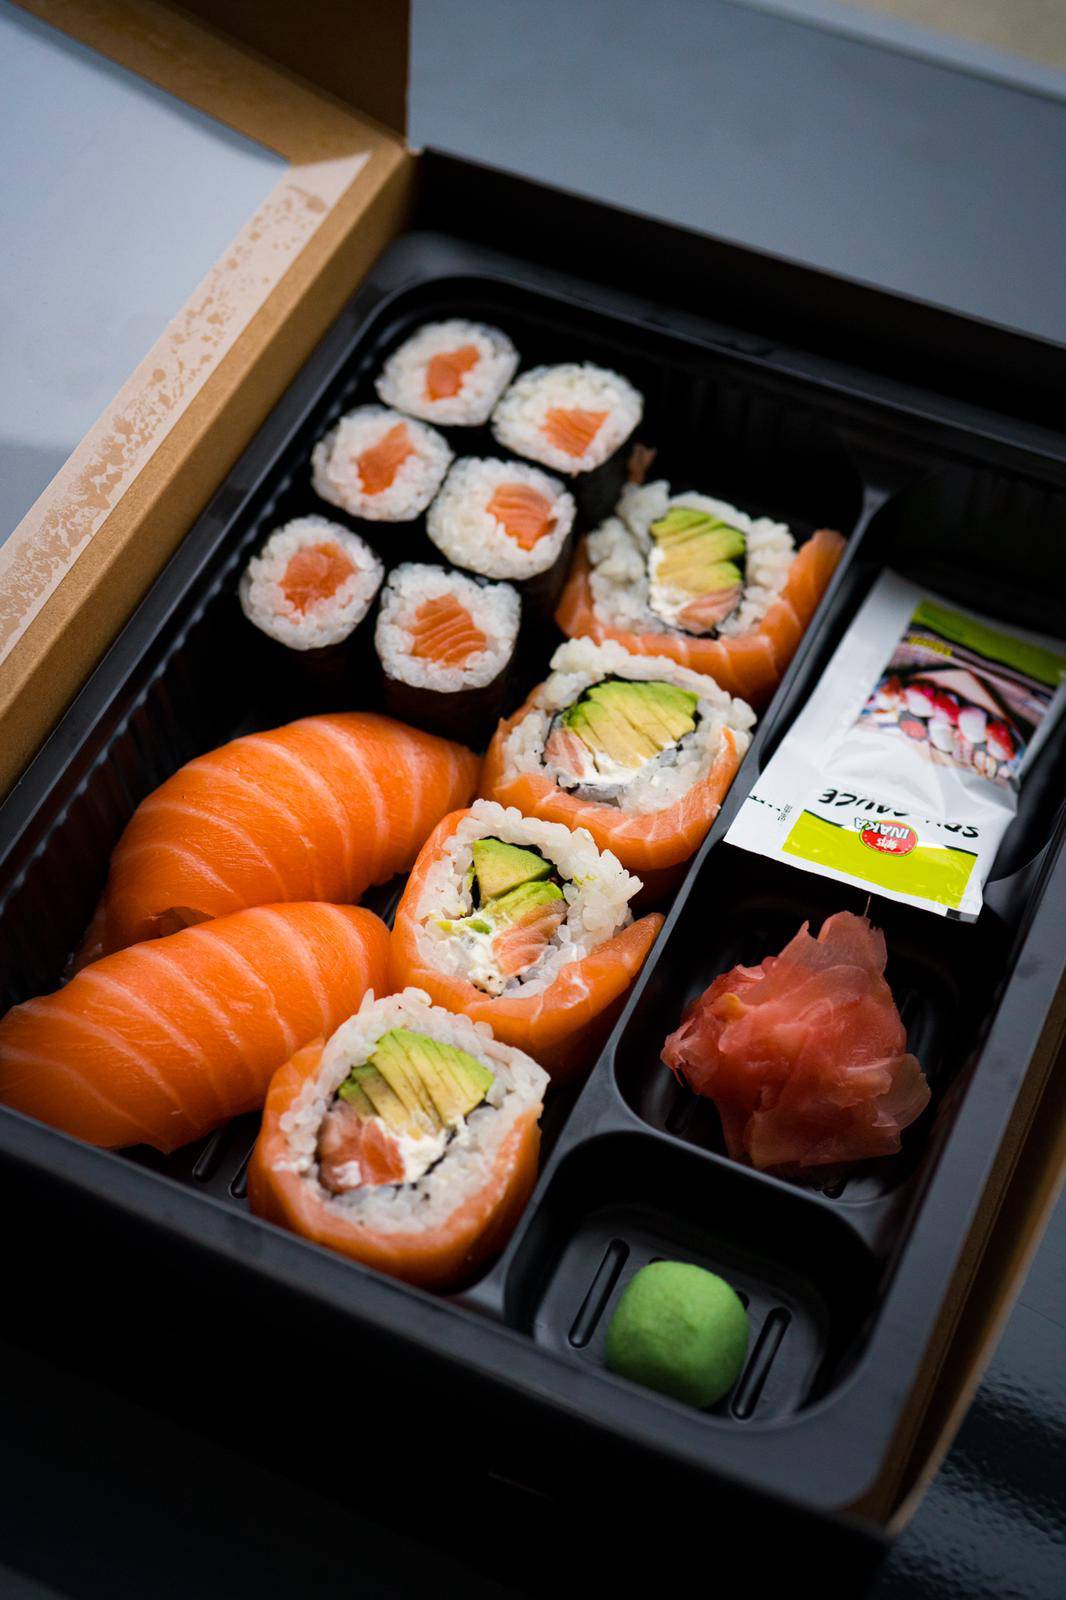 Popularna delikatesna ribarnica Fisherija širi svoju ponudu: Od sada tamo možete kupiti sushi